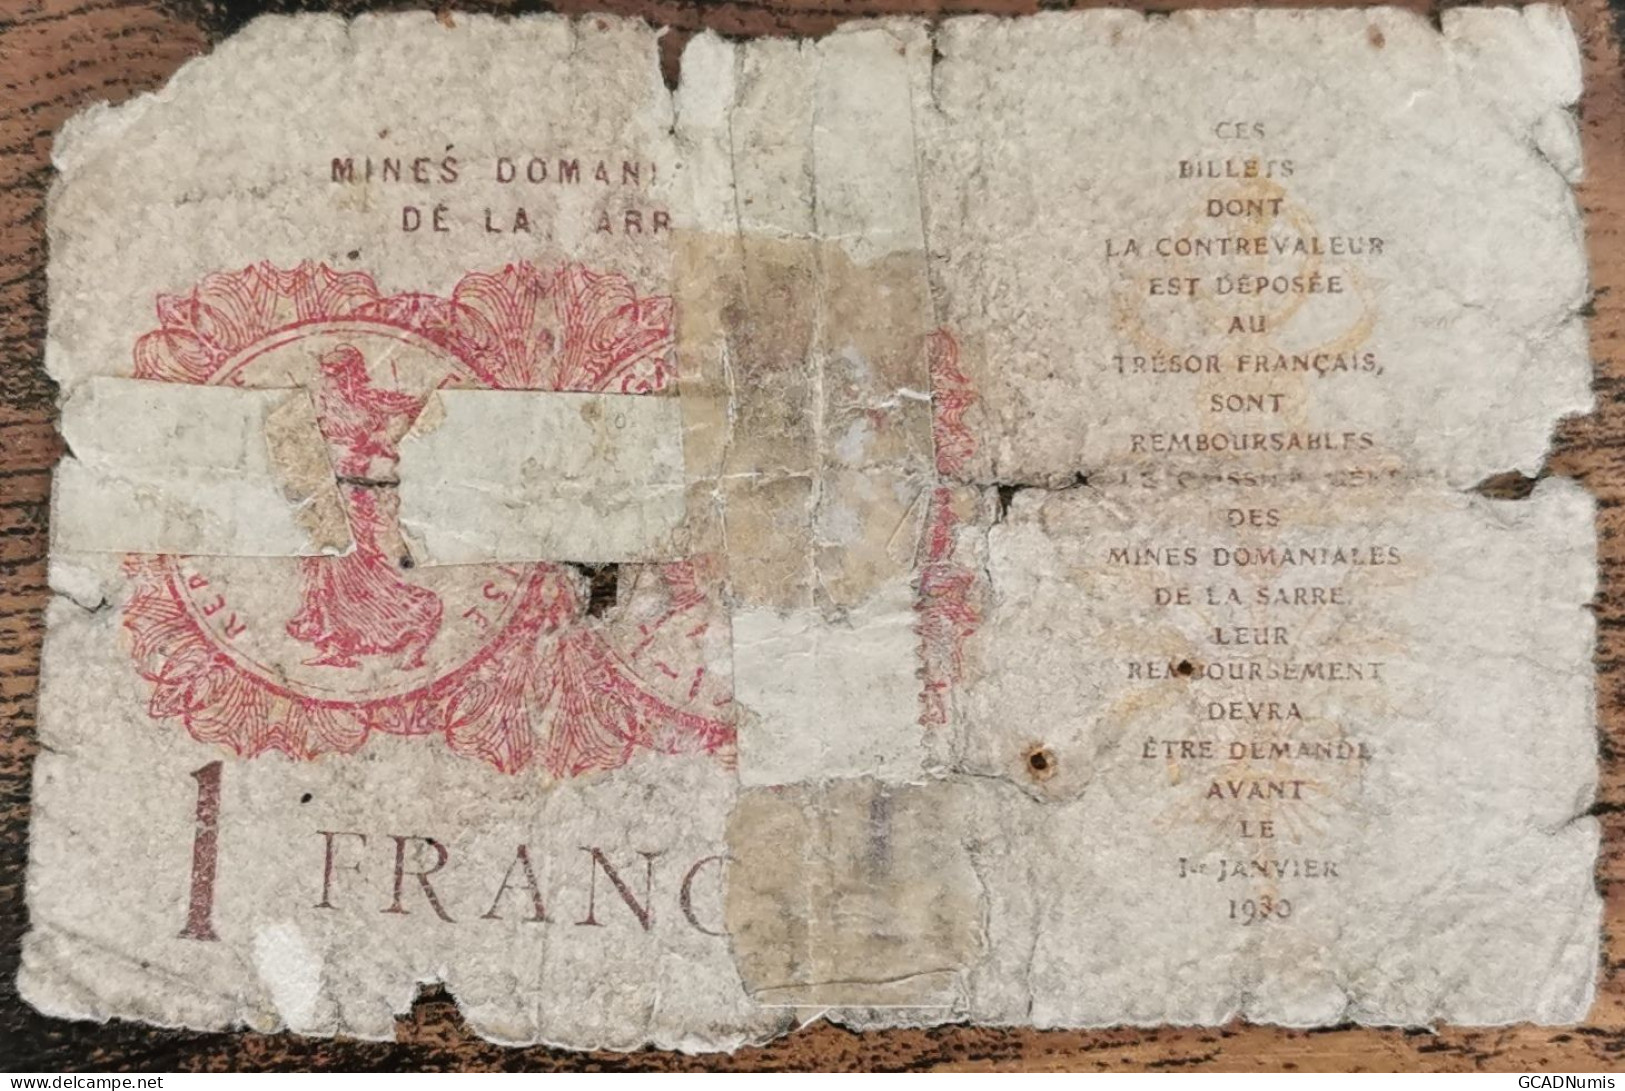 Billet De 1 Franc MINES DOMANIALES DE LA SARRE état Français A 476890  Cf Photos - 1947 Sarre